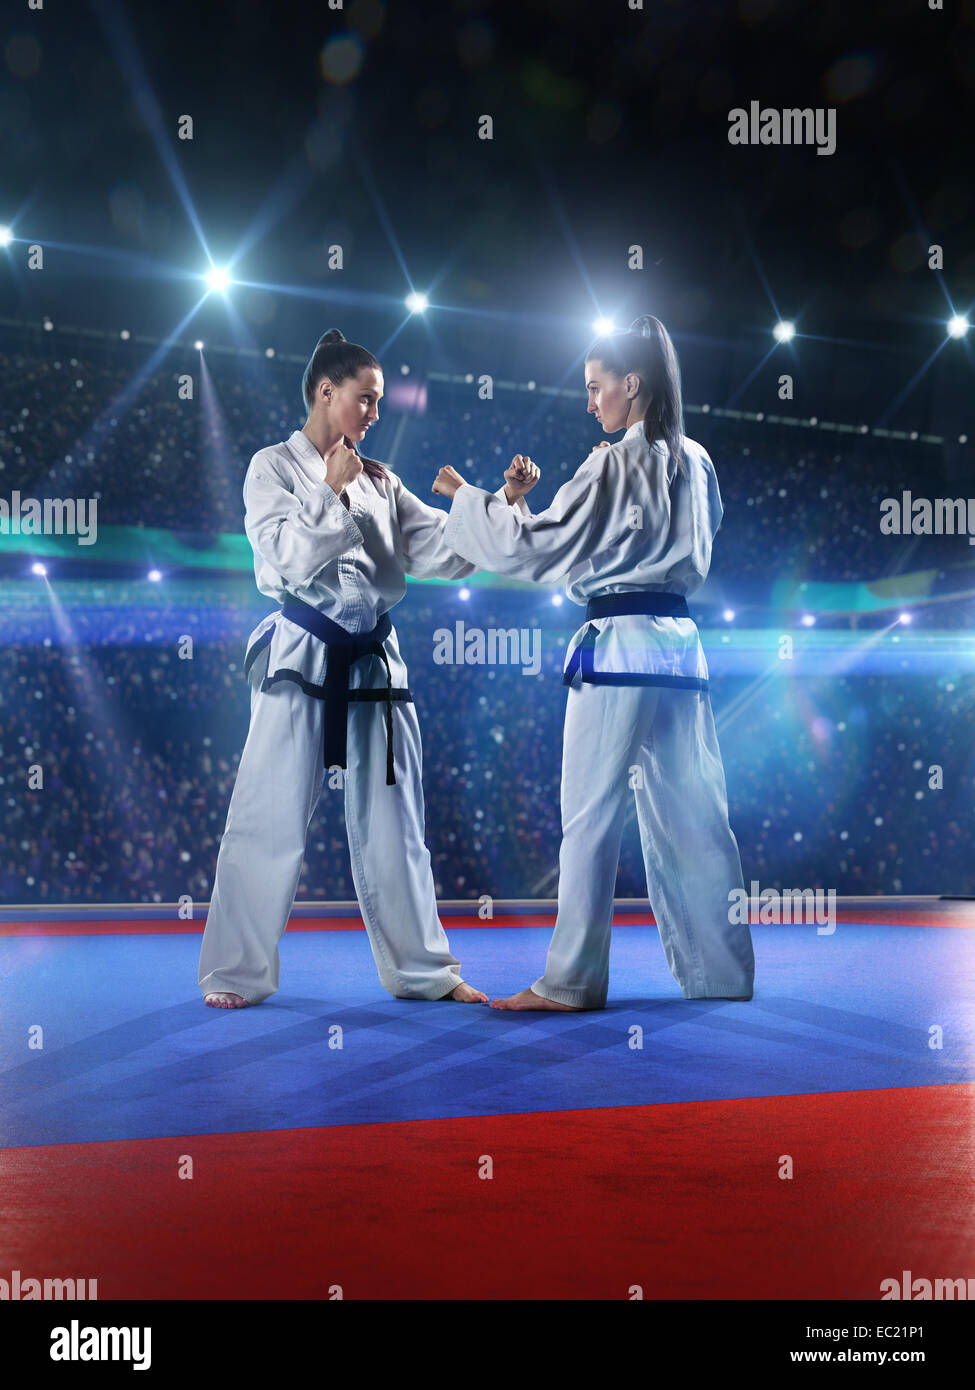 Zwei professionelle weibliche Karatekämpfer kämpfen Stockfoto